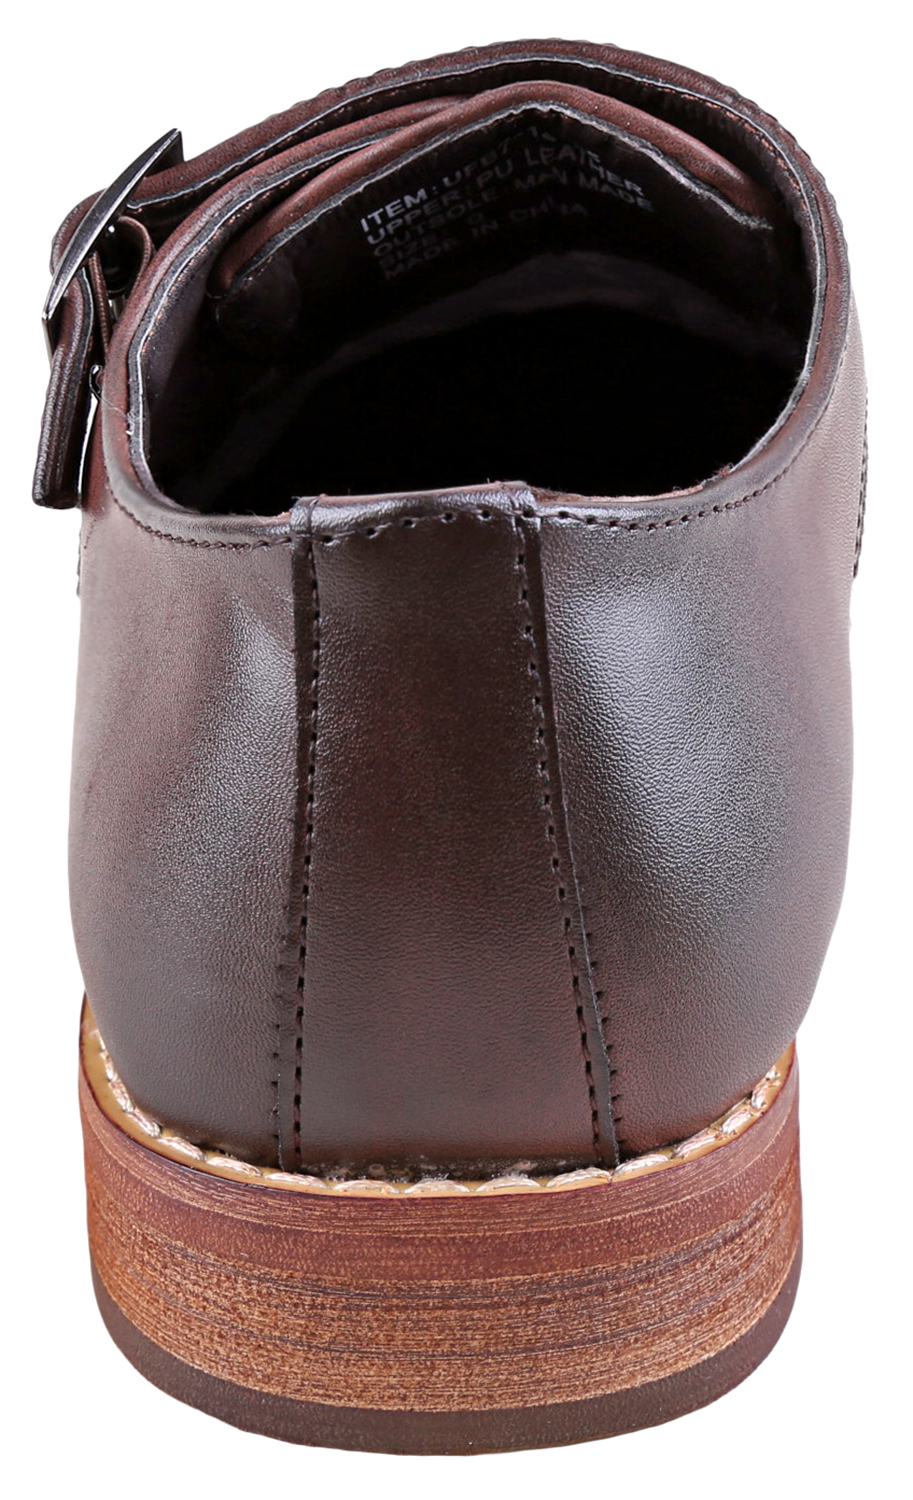 Urban Fox Allen Men's Dress Shoe | Double Monk Strap | Brogue | Wingtip Shoes for Men | Dark Brown 12 M US - image 4 of 7